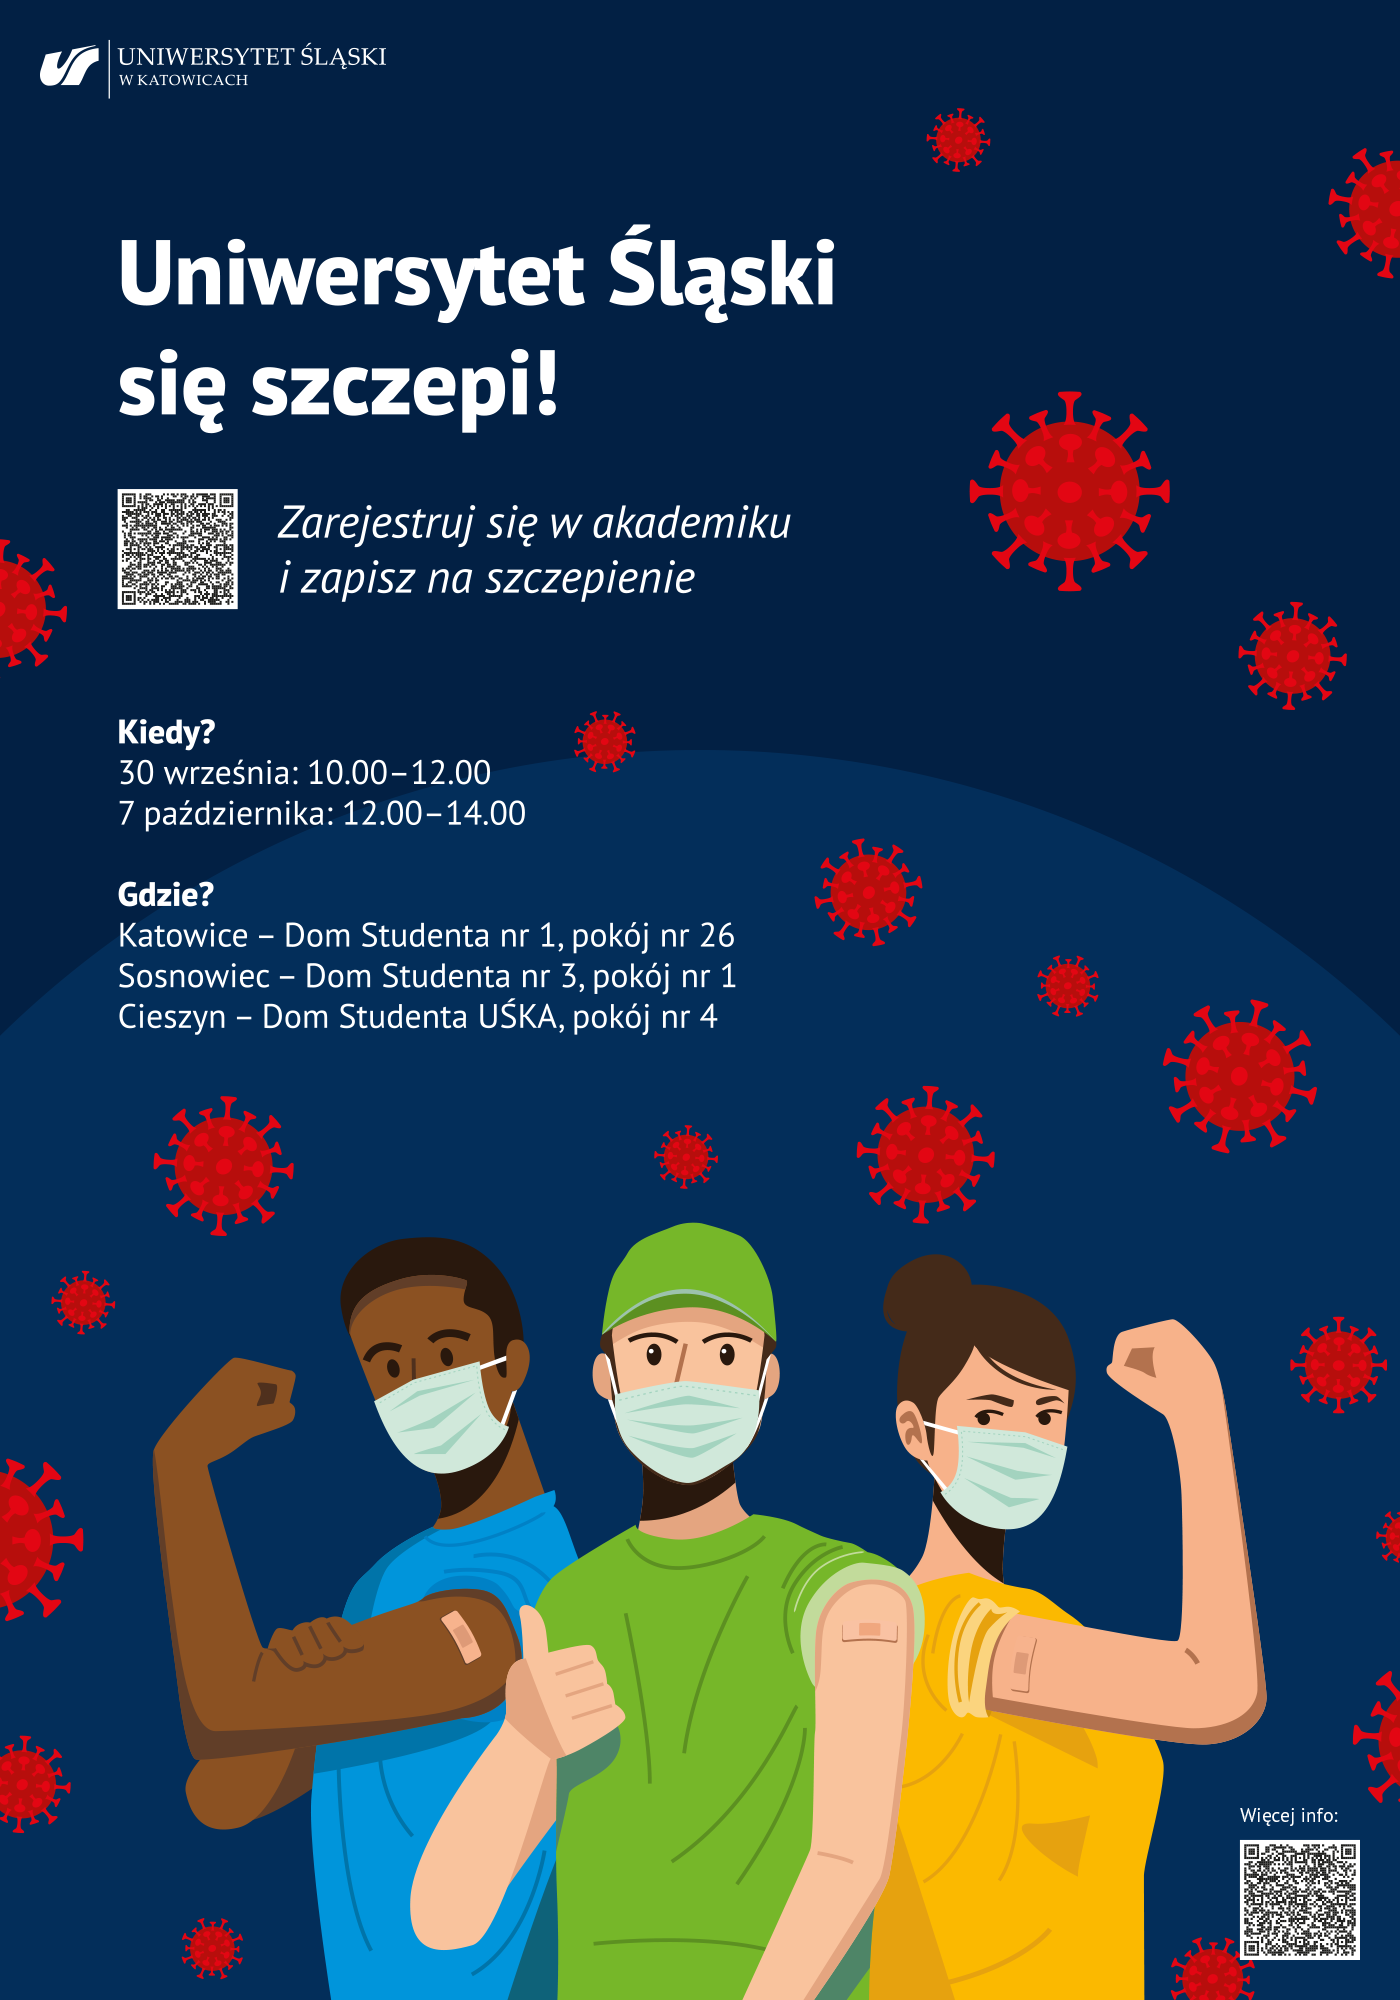 Plakat promujący szczepienia na Uniwersytecie Śląskim